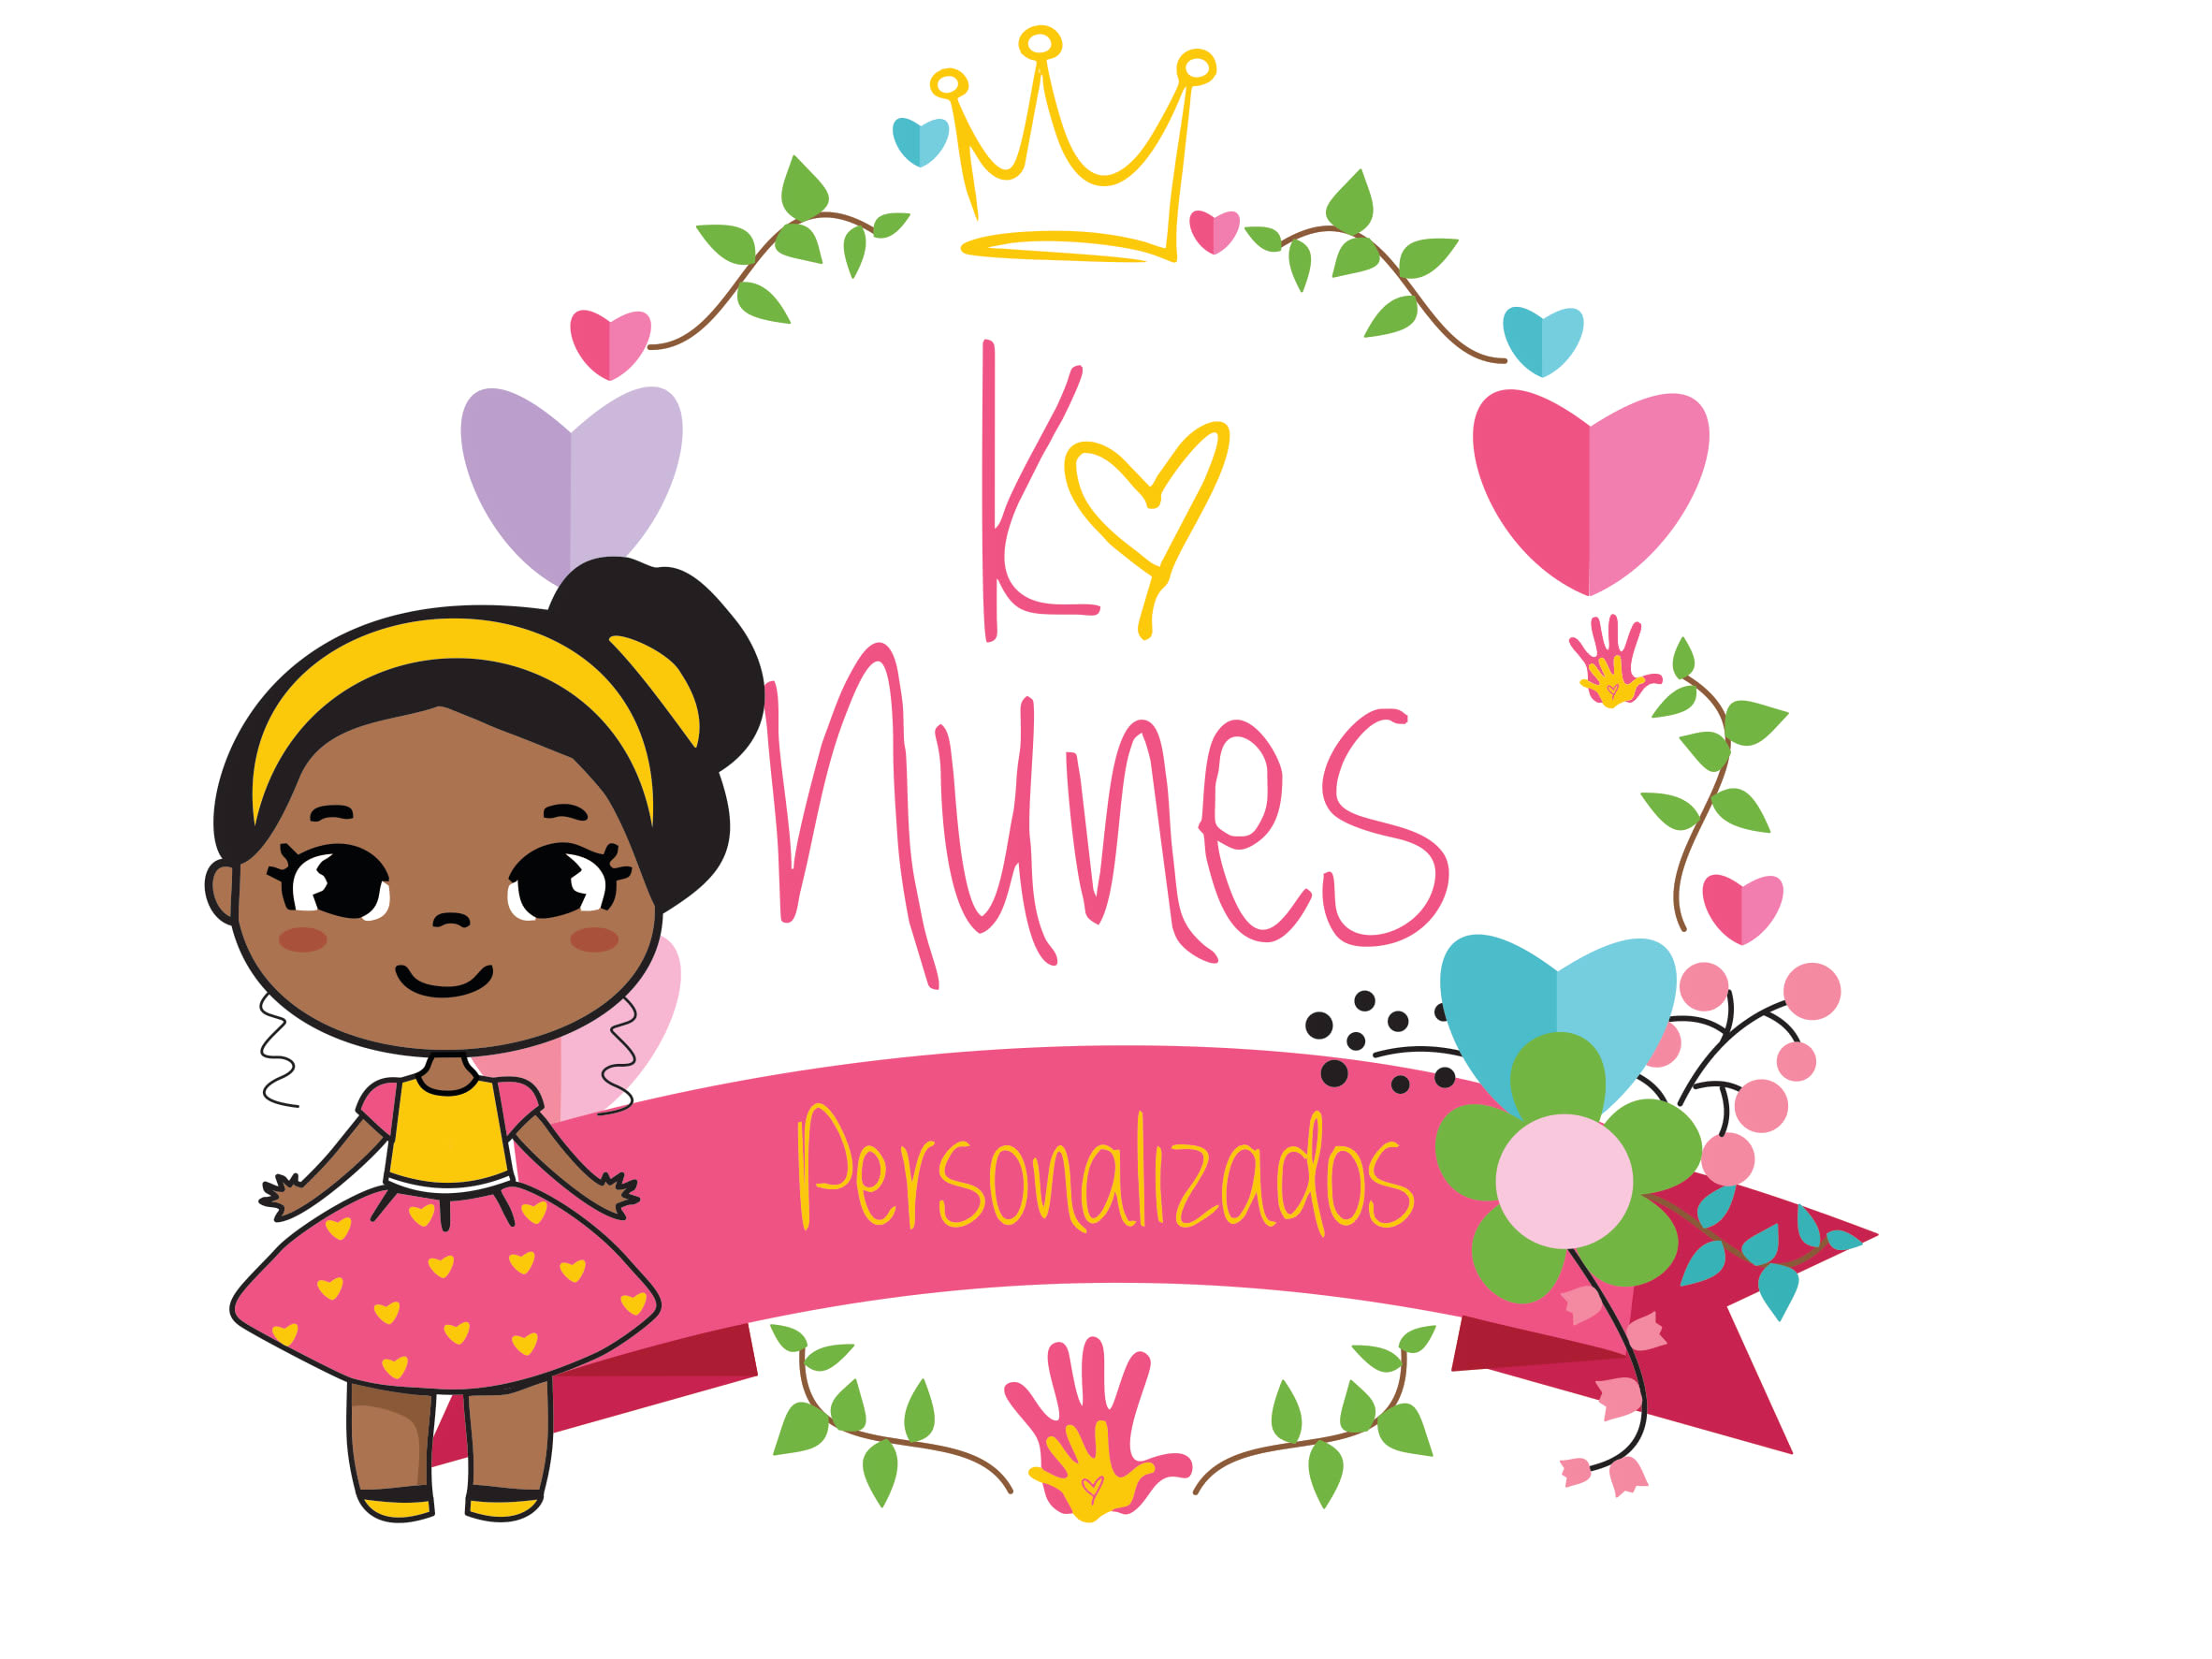 Ka Nunes Personalizados